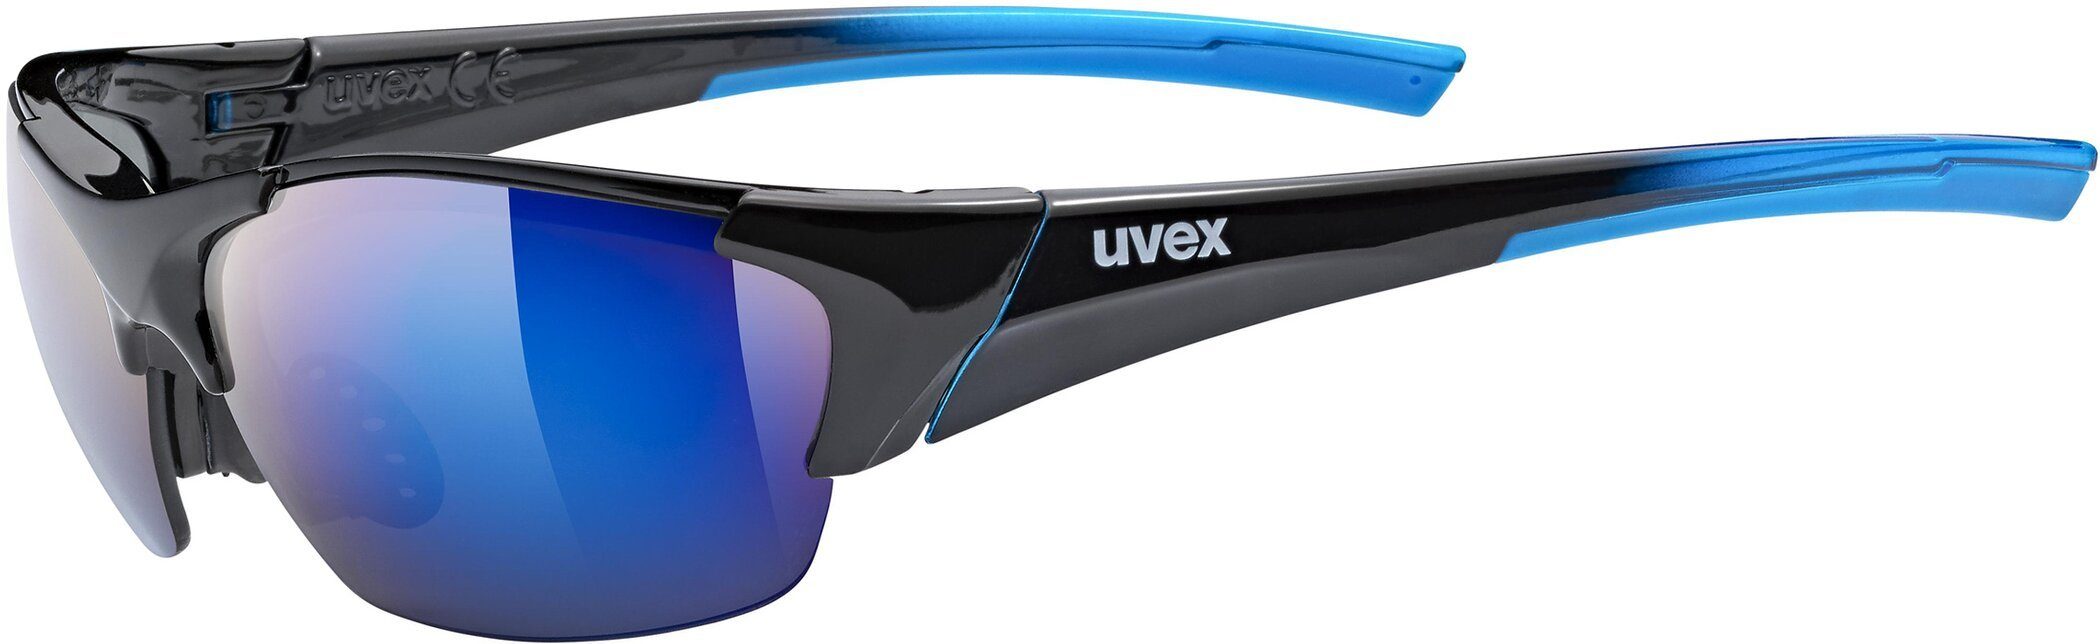 Uvex UVEX BLACK BLUE BLAZE Sonnenbrille III